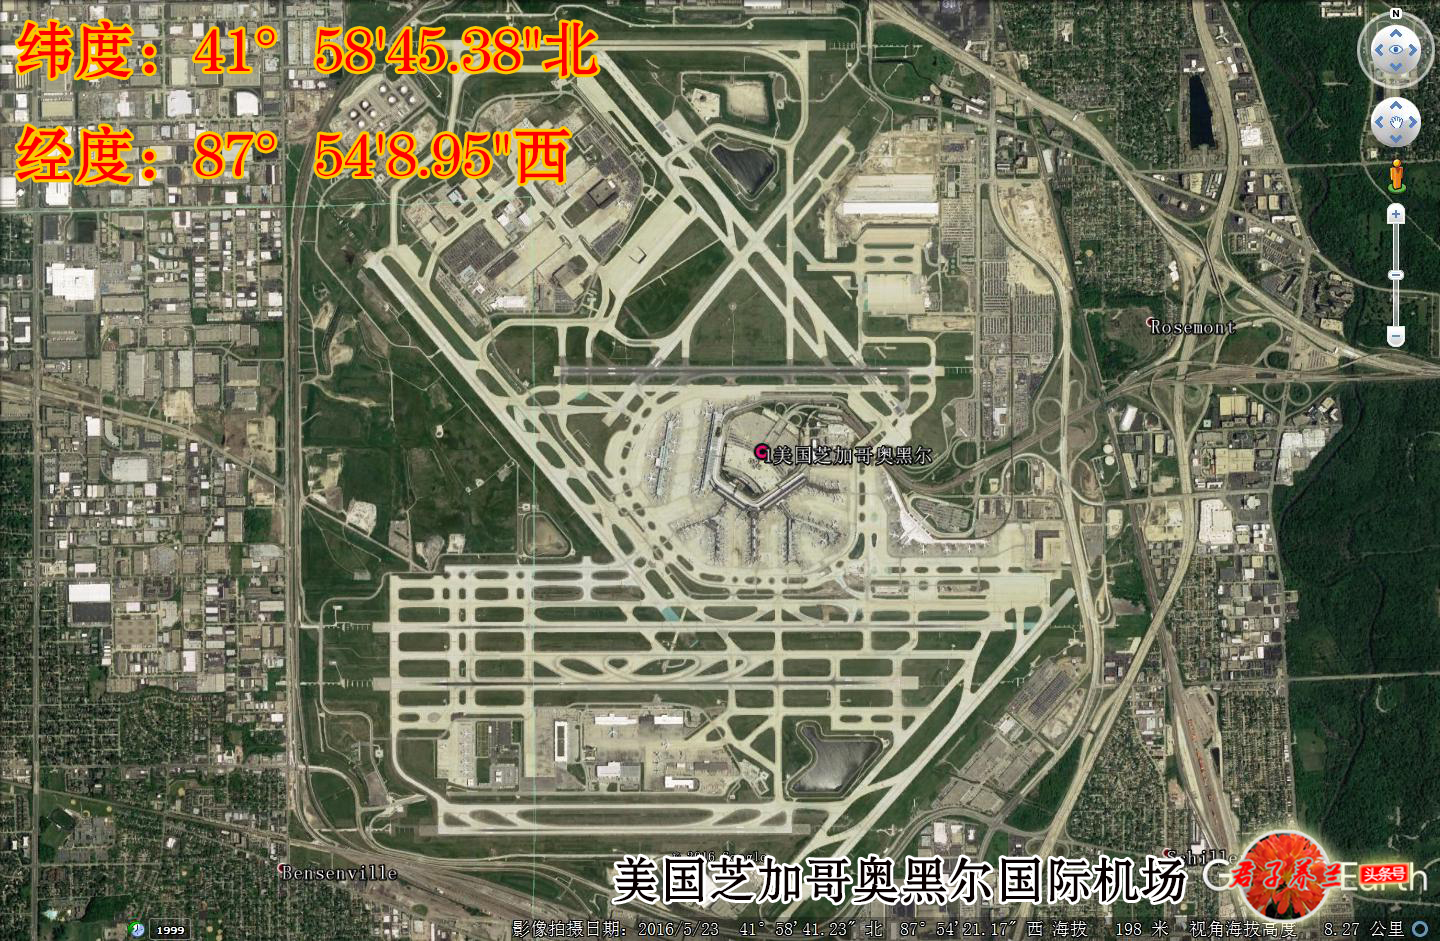 芝加哥卫星地图图片